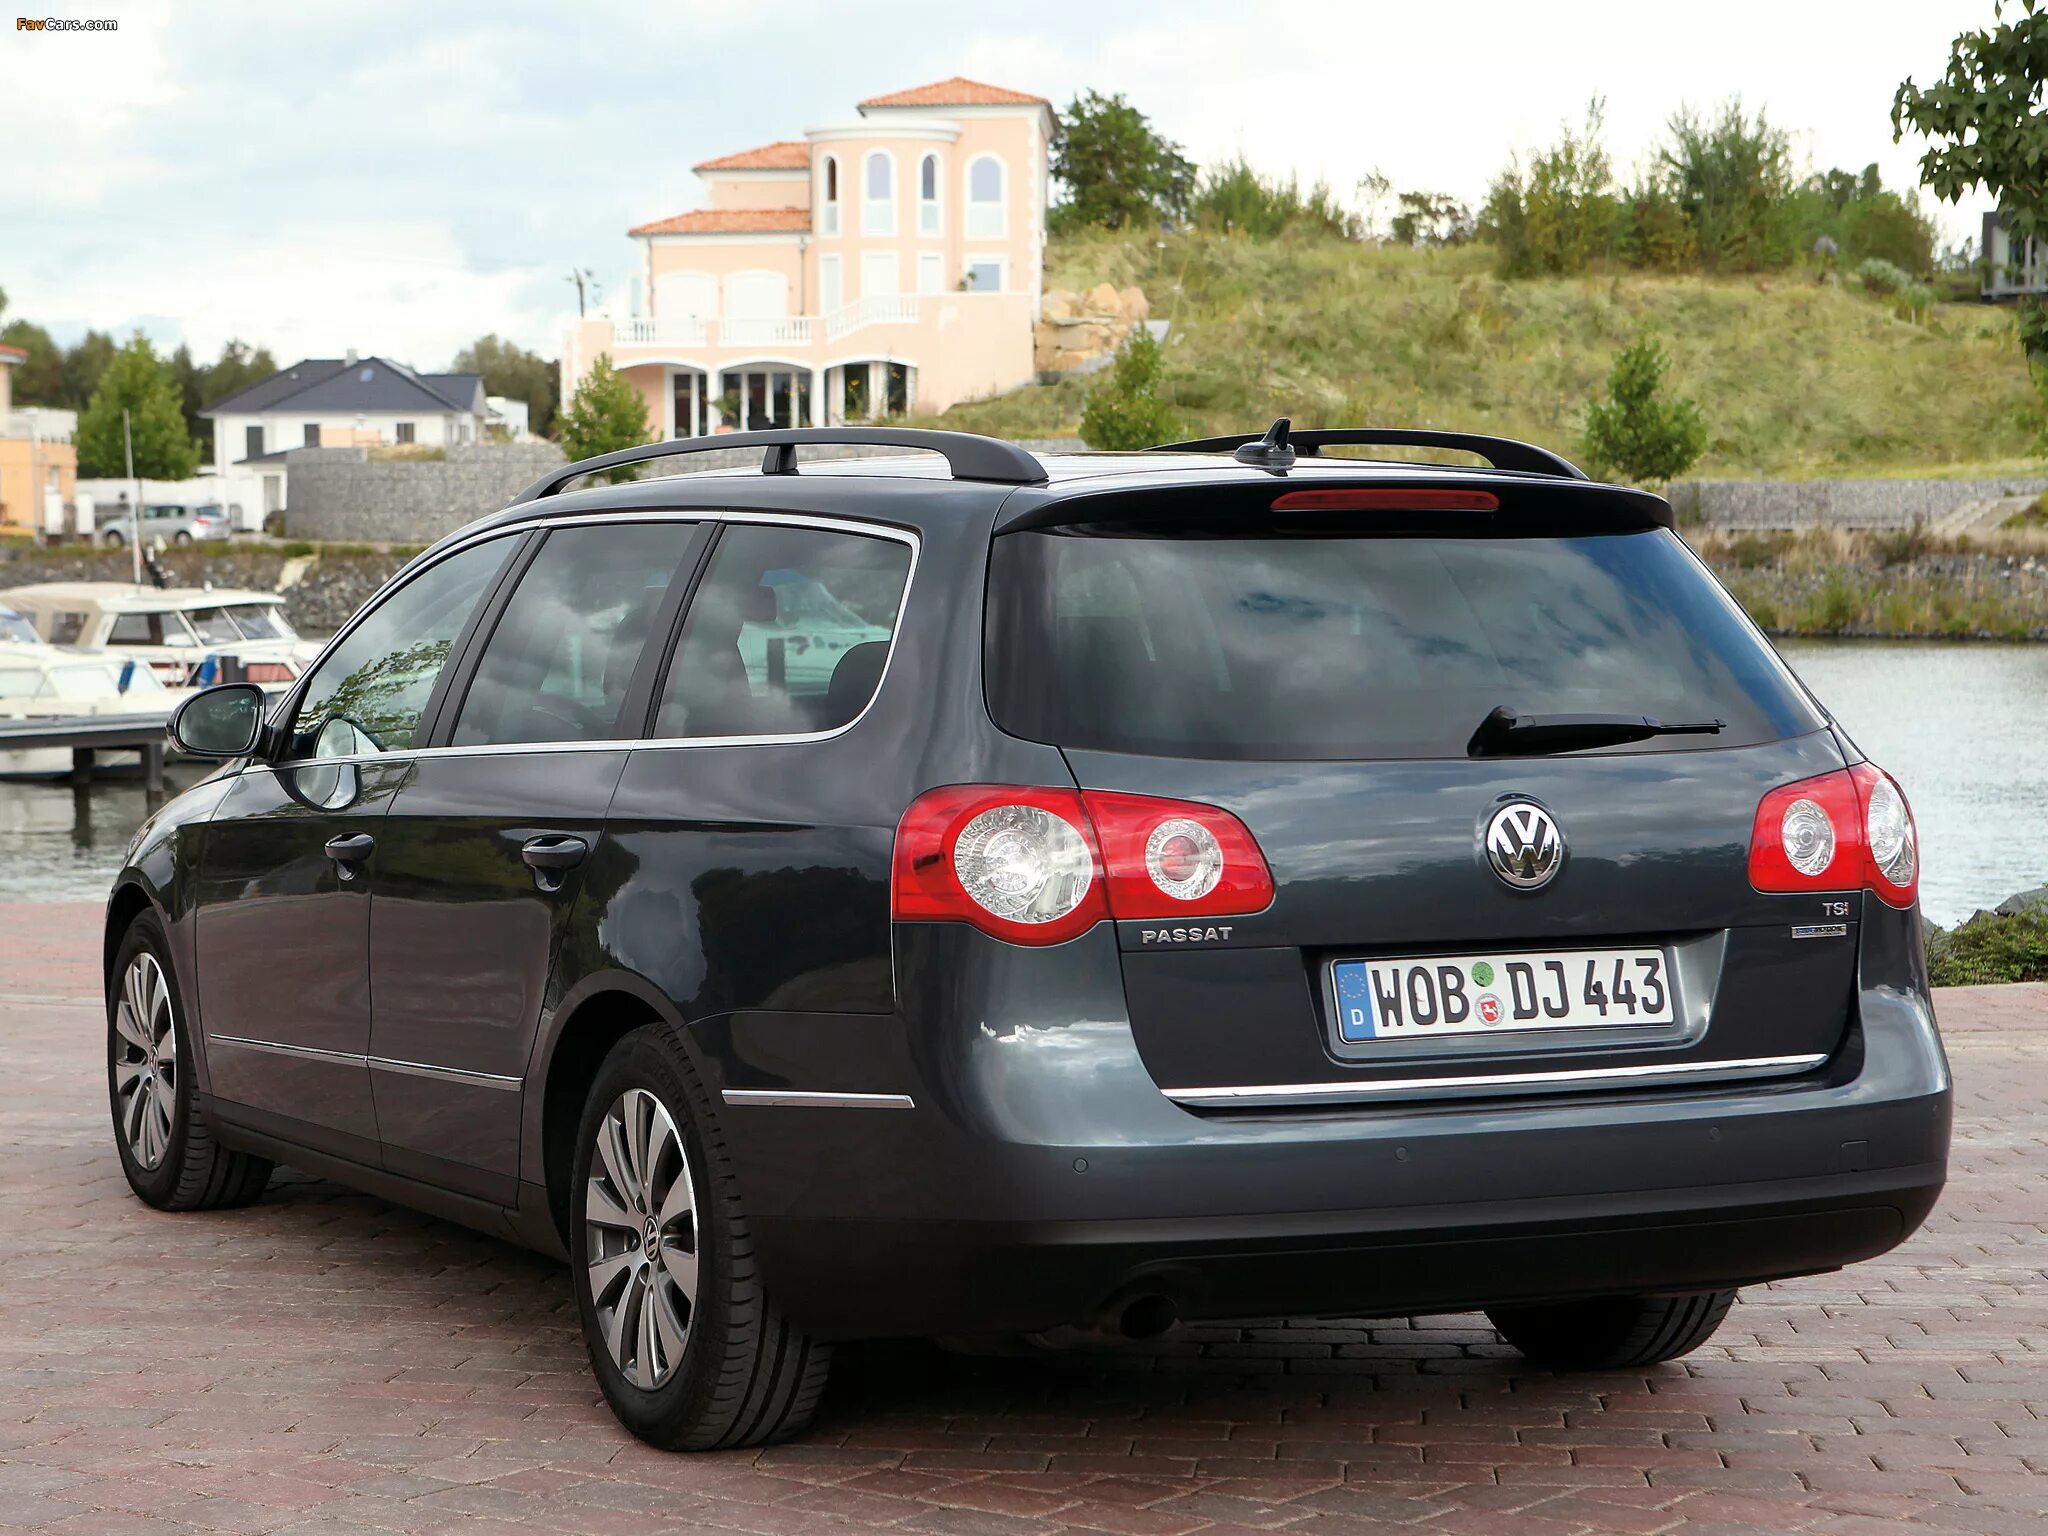 Volkswagen Passat 2008 универсал. Фольксваген Passat b6 variant. Volkswagen Passat b6 универсал. Пассат б6 2.0 универсал.